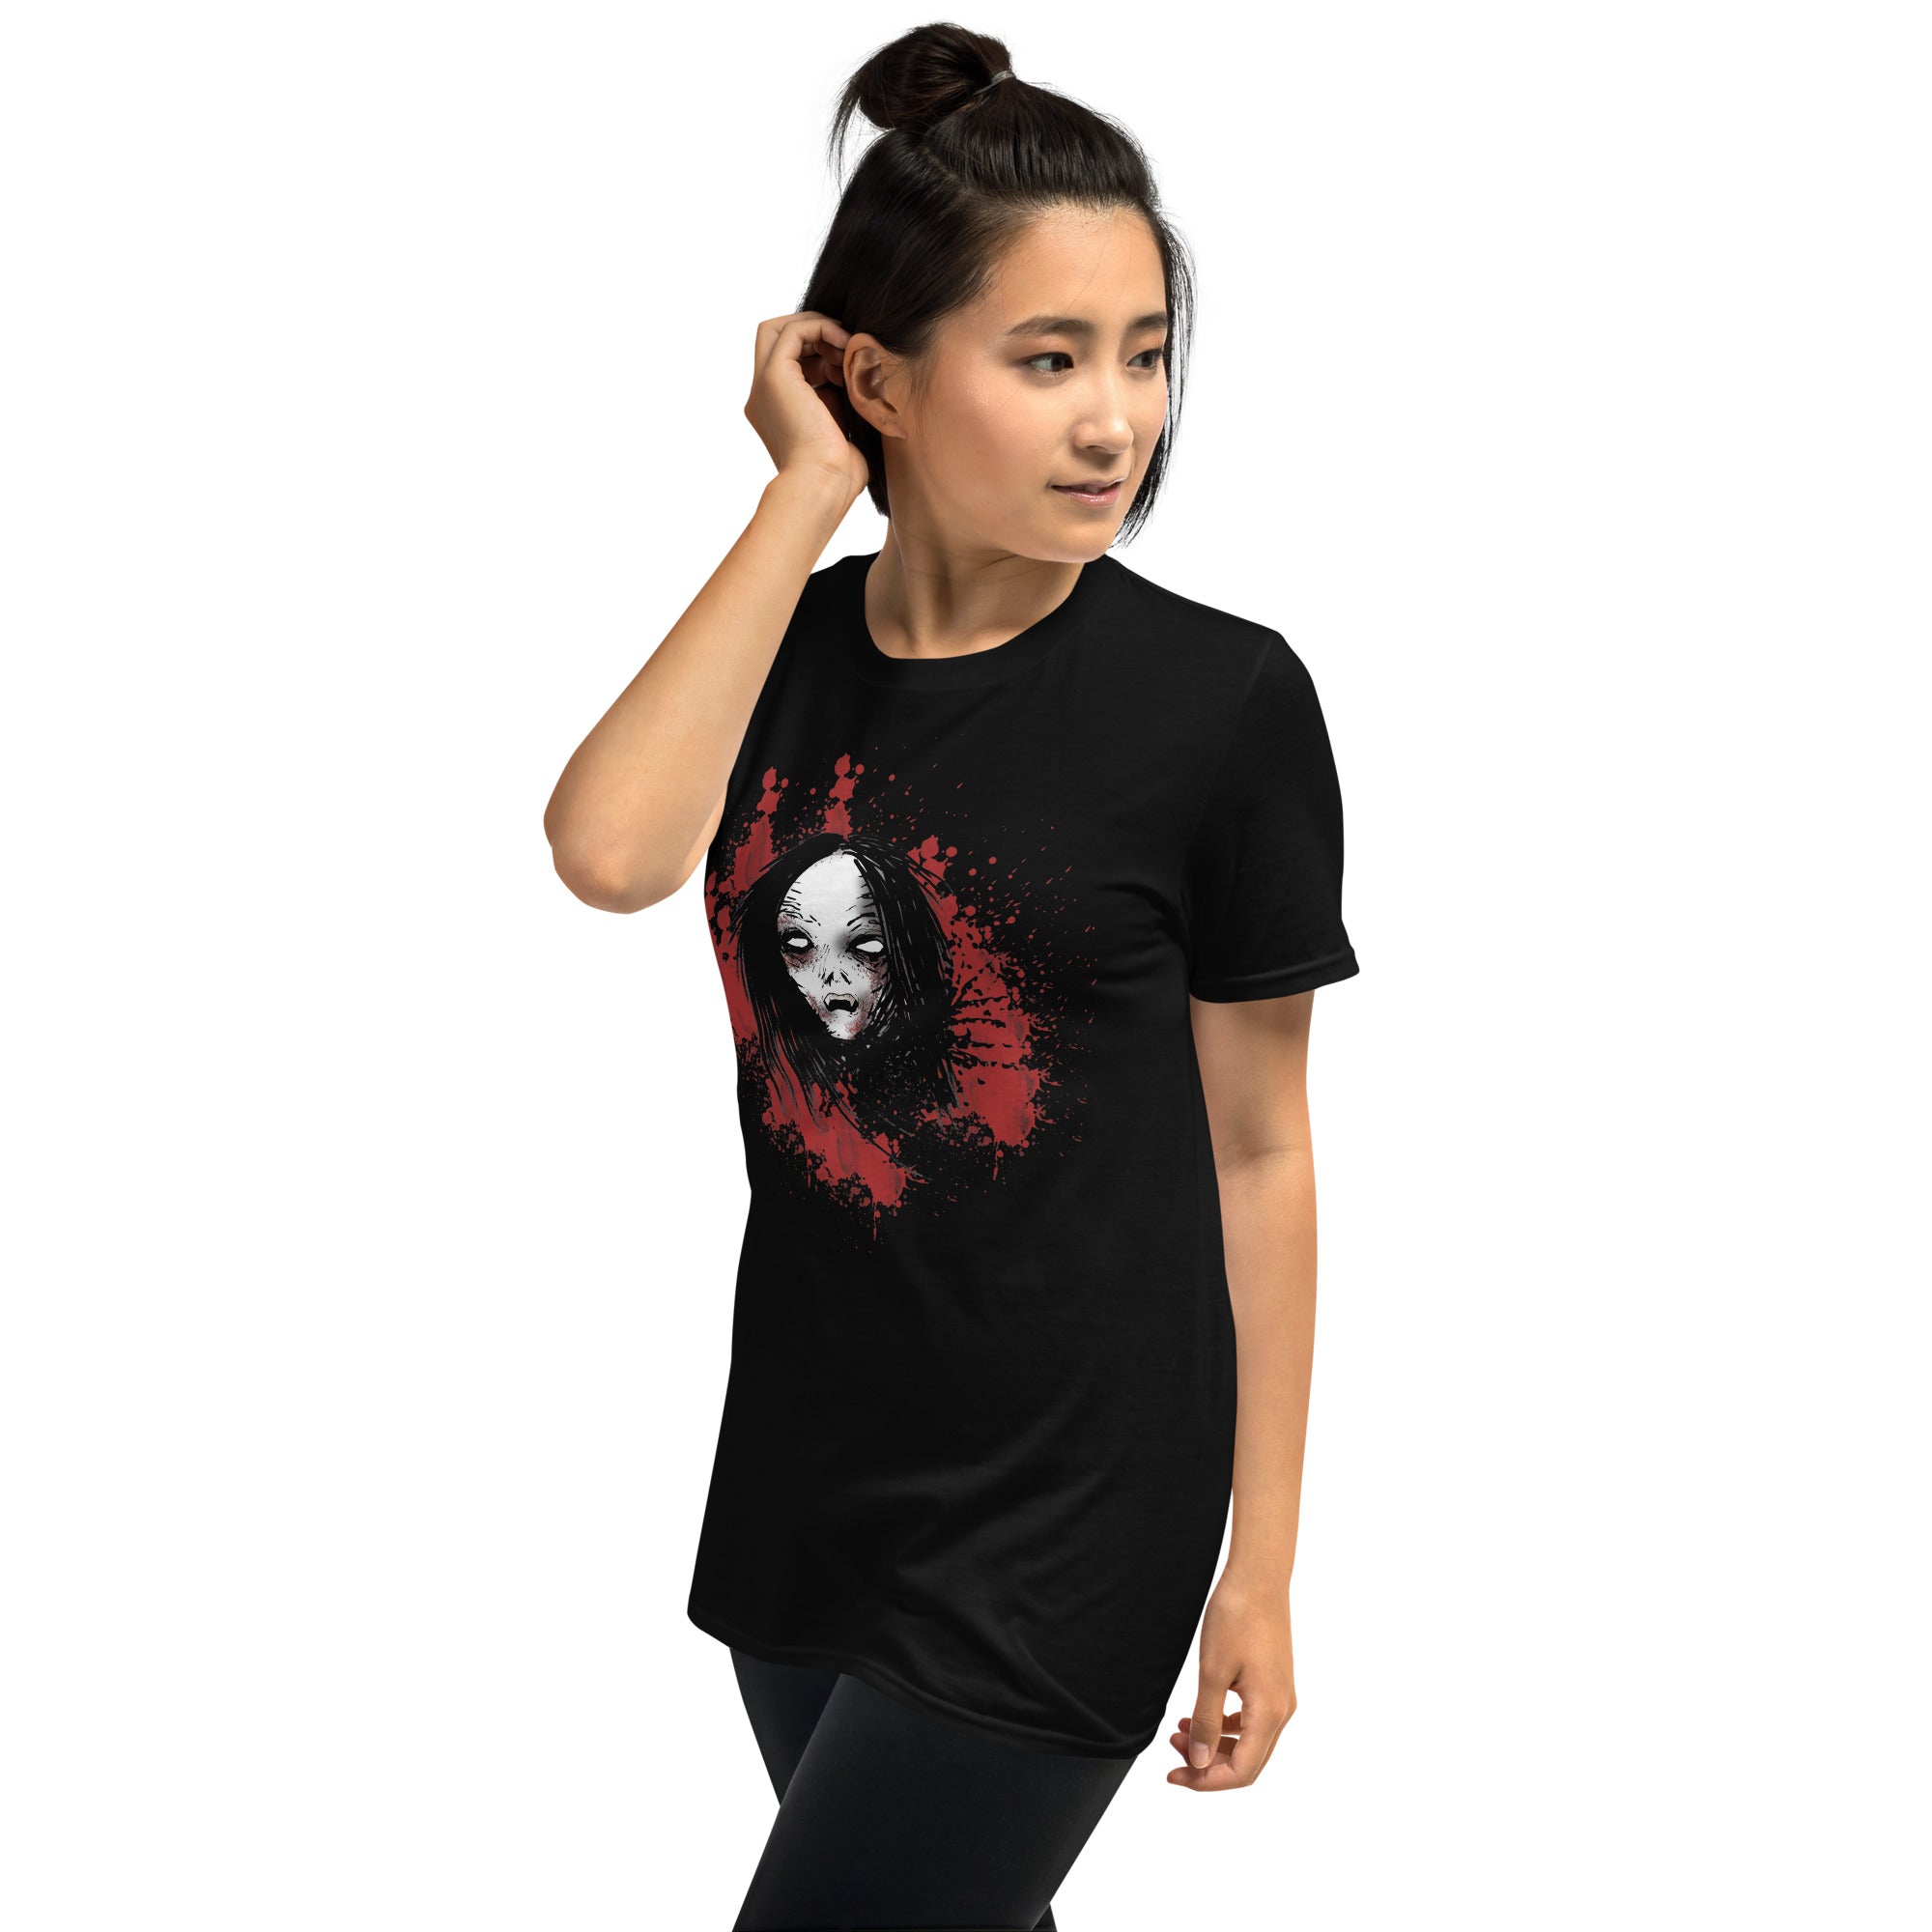 Undead Anime Vampire Girl Horror Men's Short Sleeve T-Shirt - Edge of Life Designs